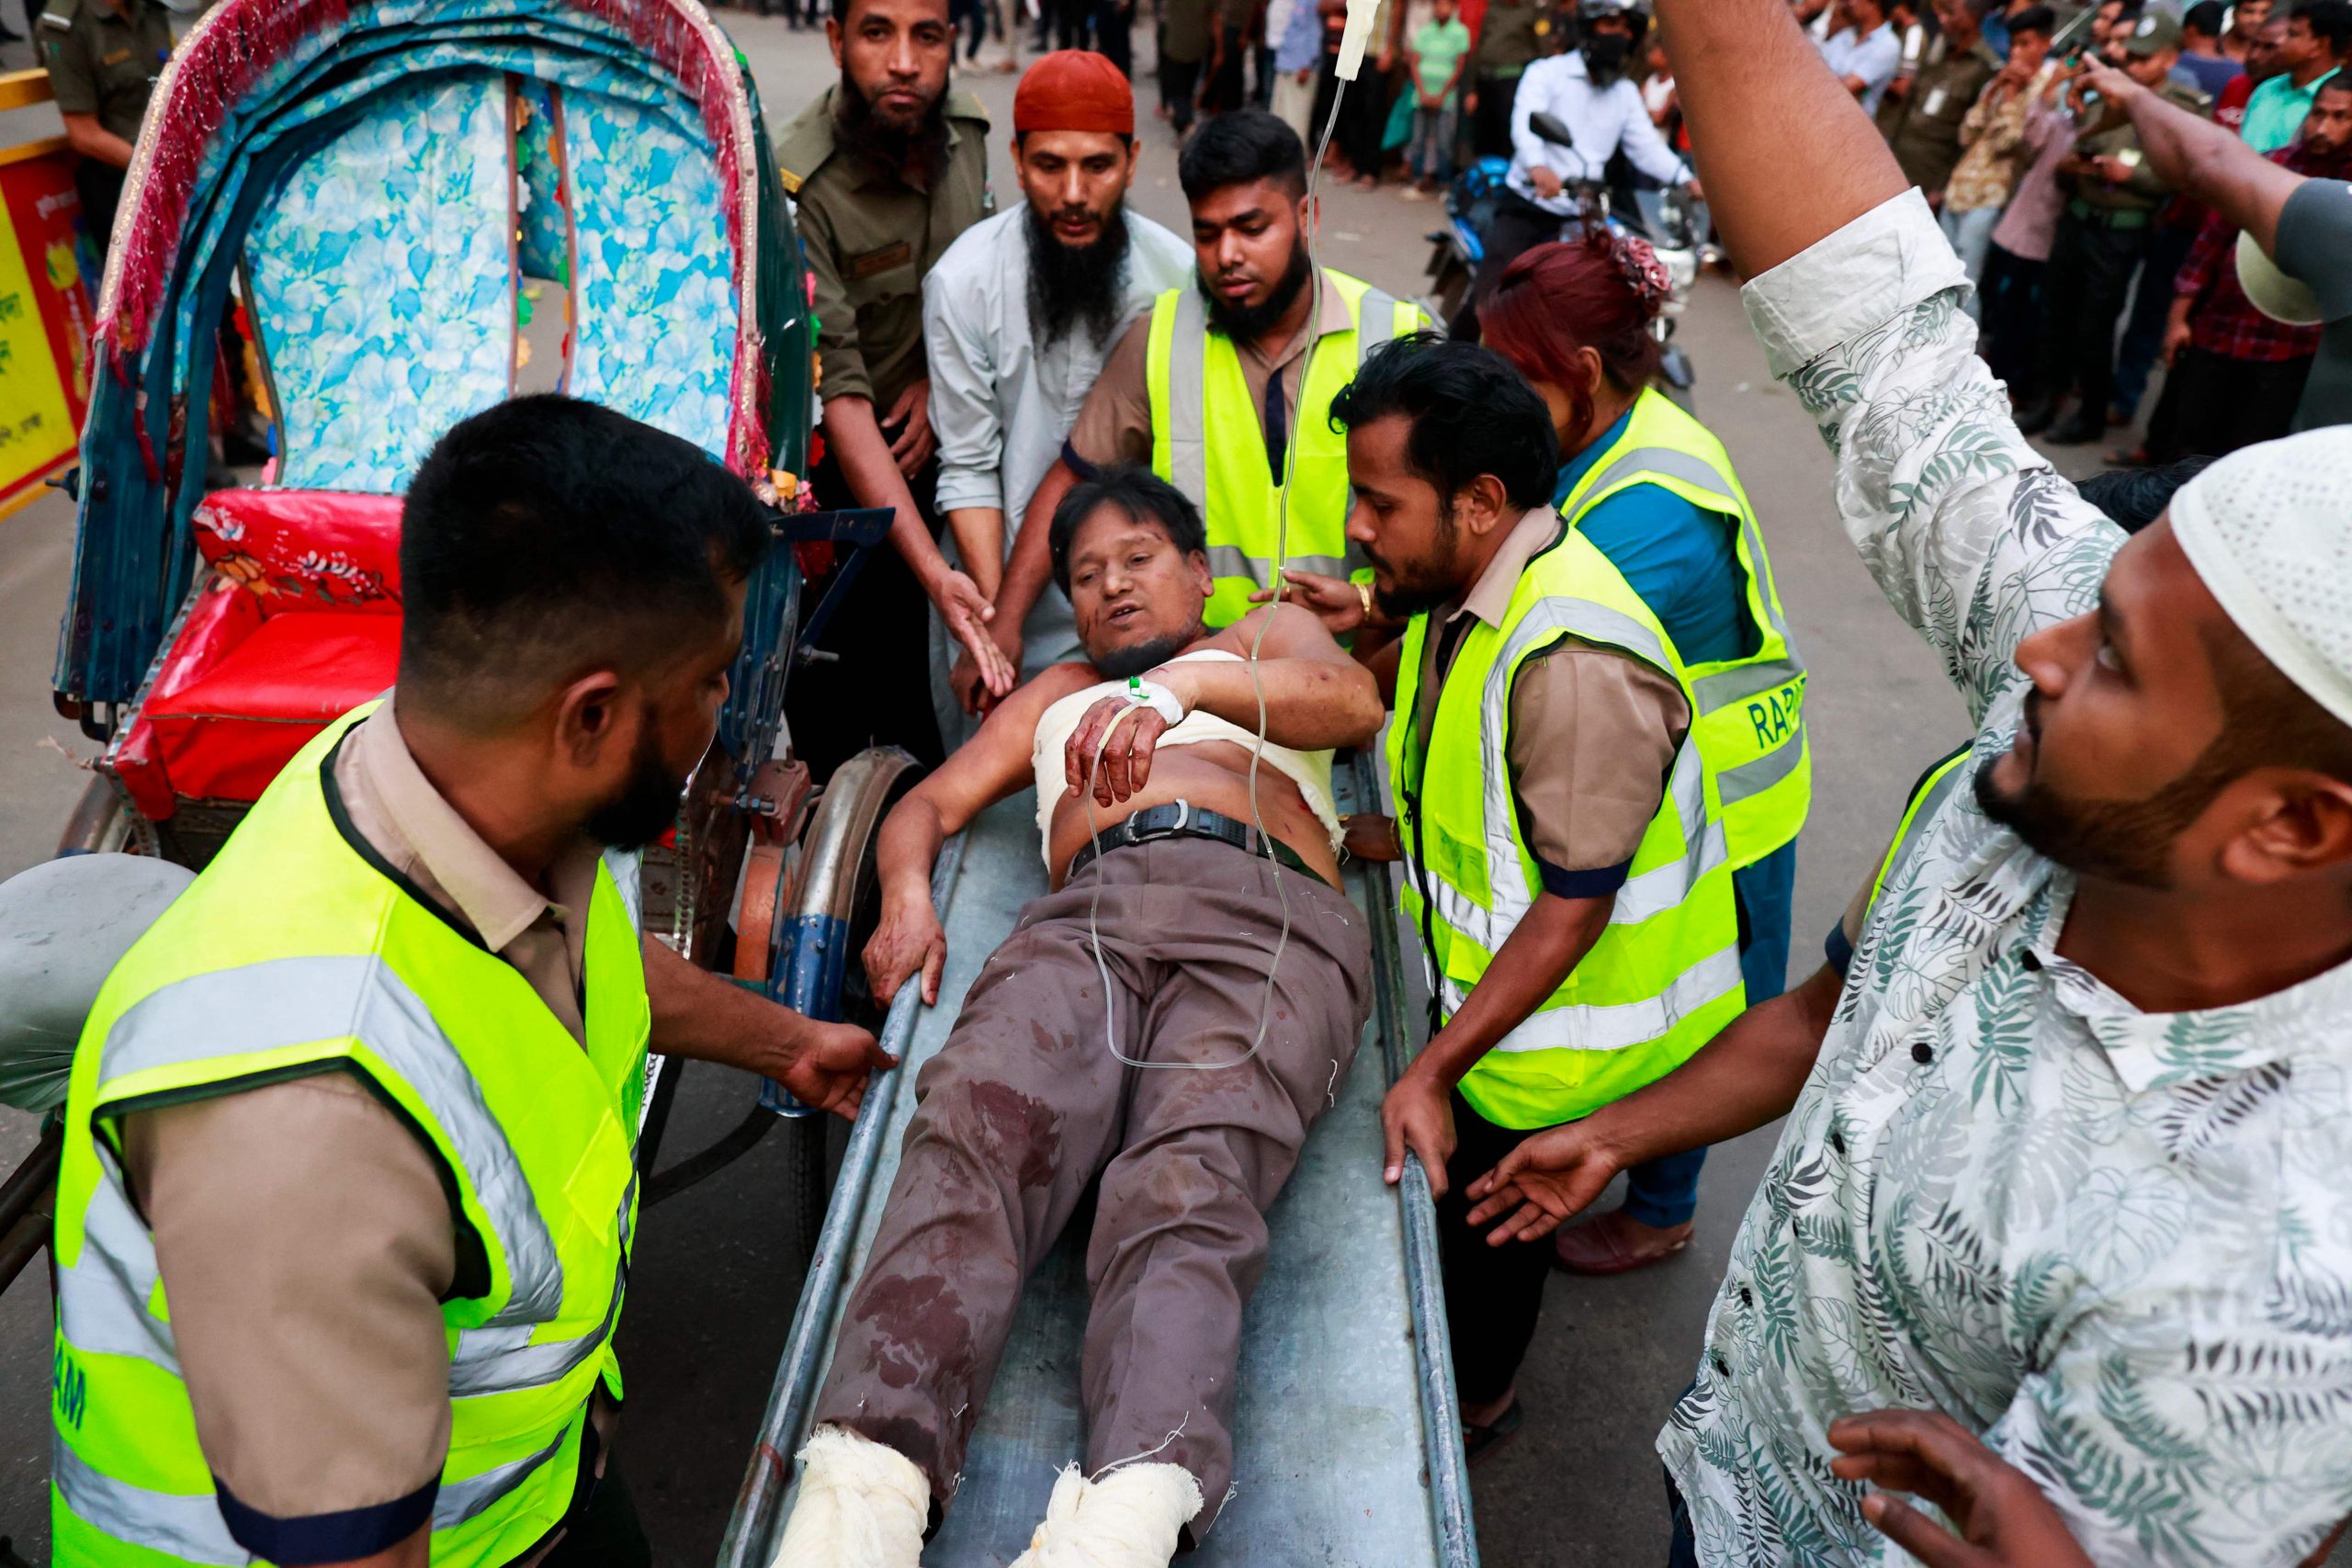 孟加拉首都达卡闹区大楼爆炸 至少14死140伤